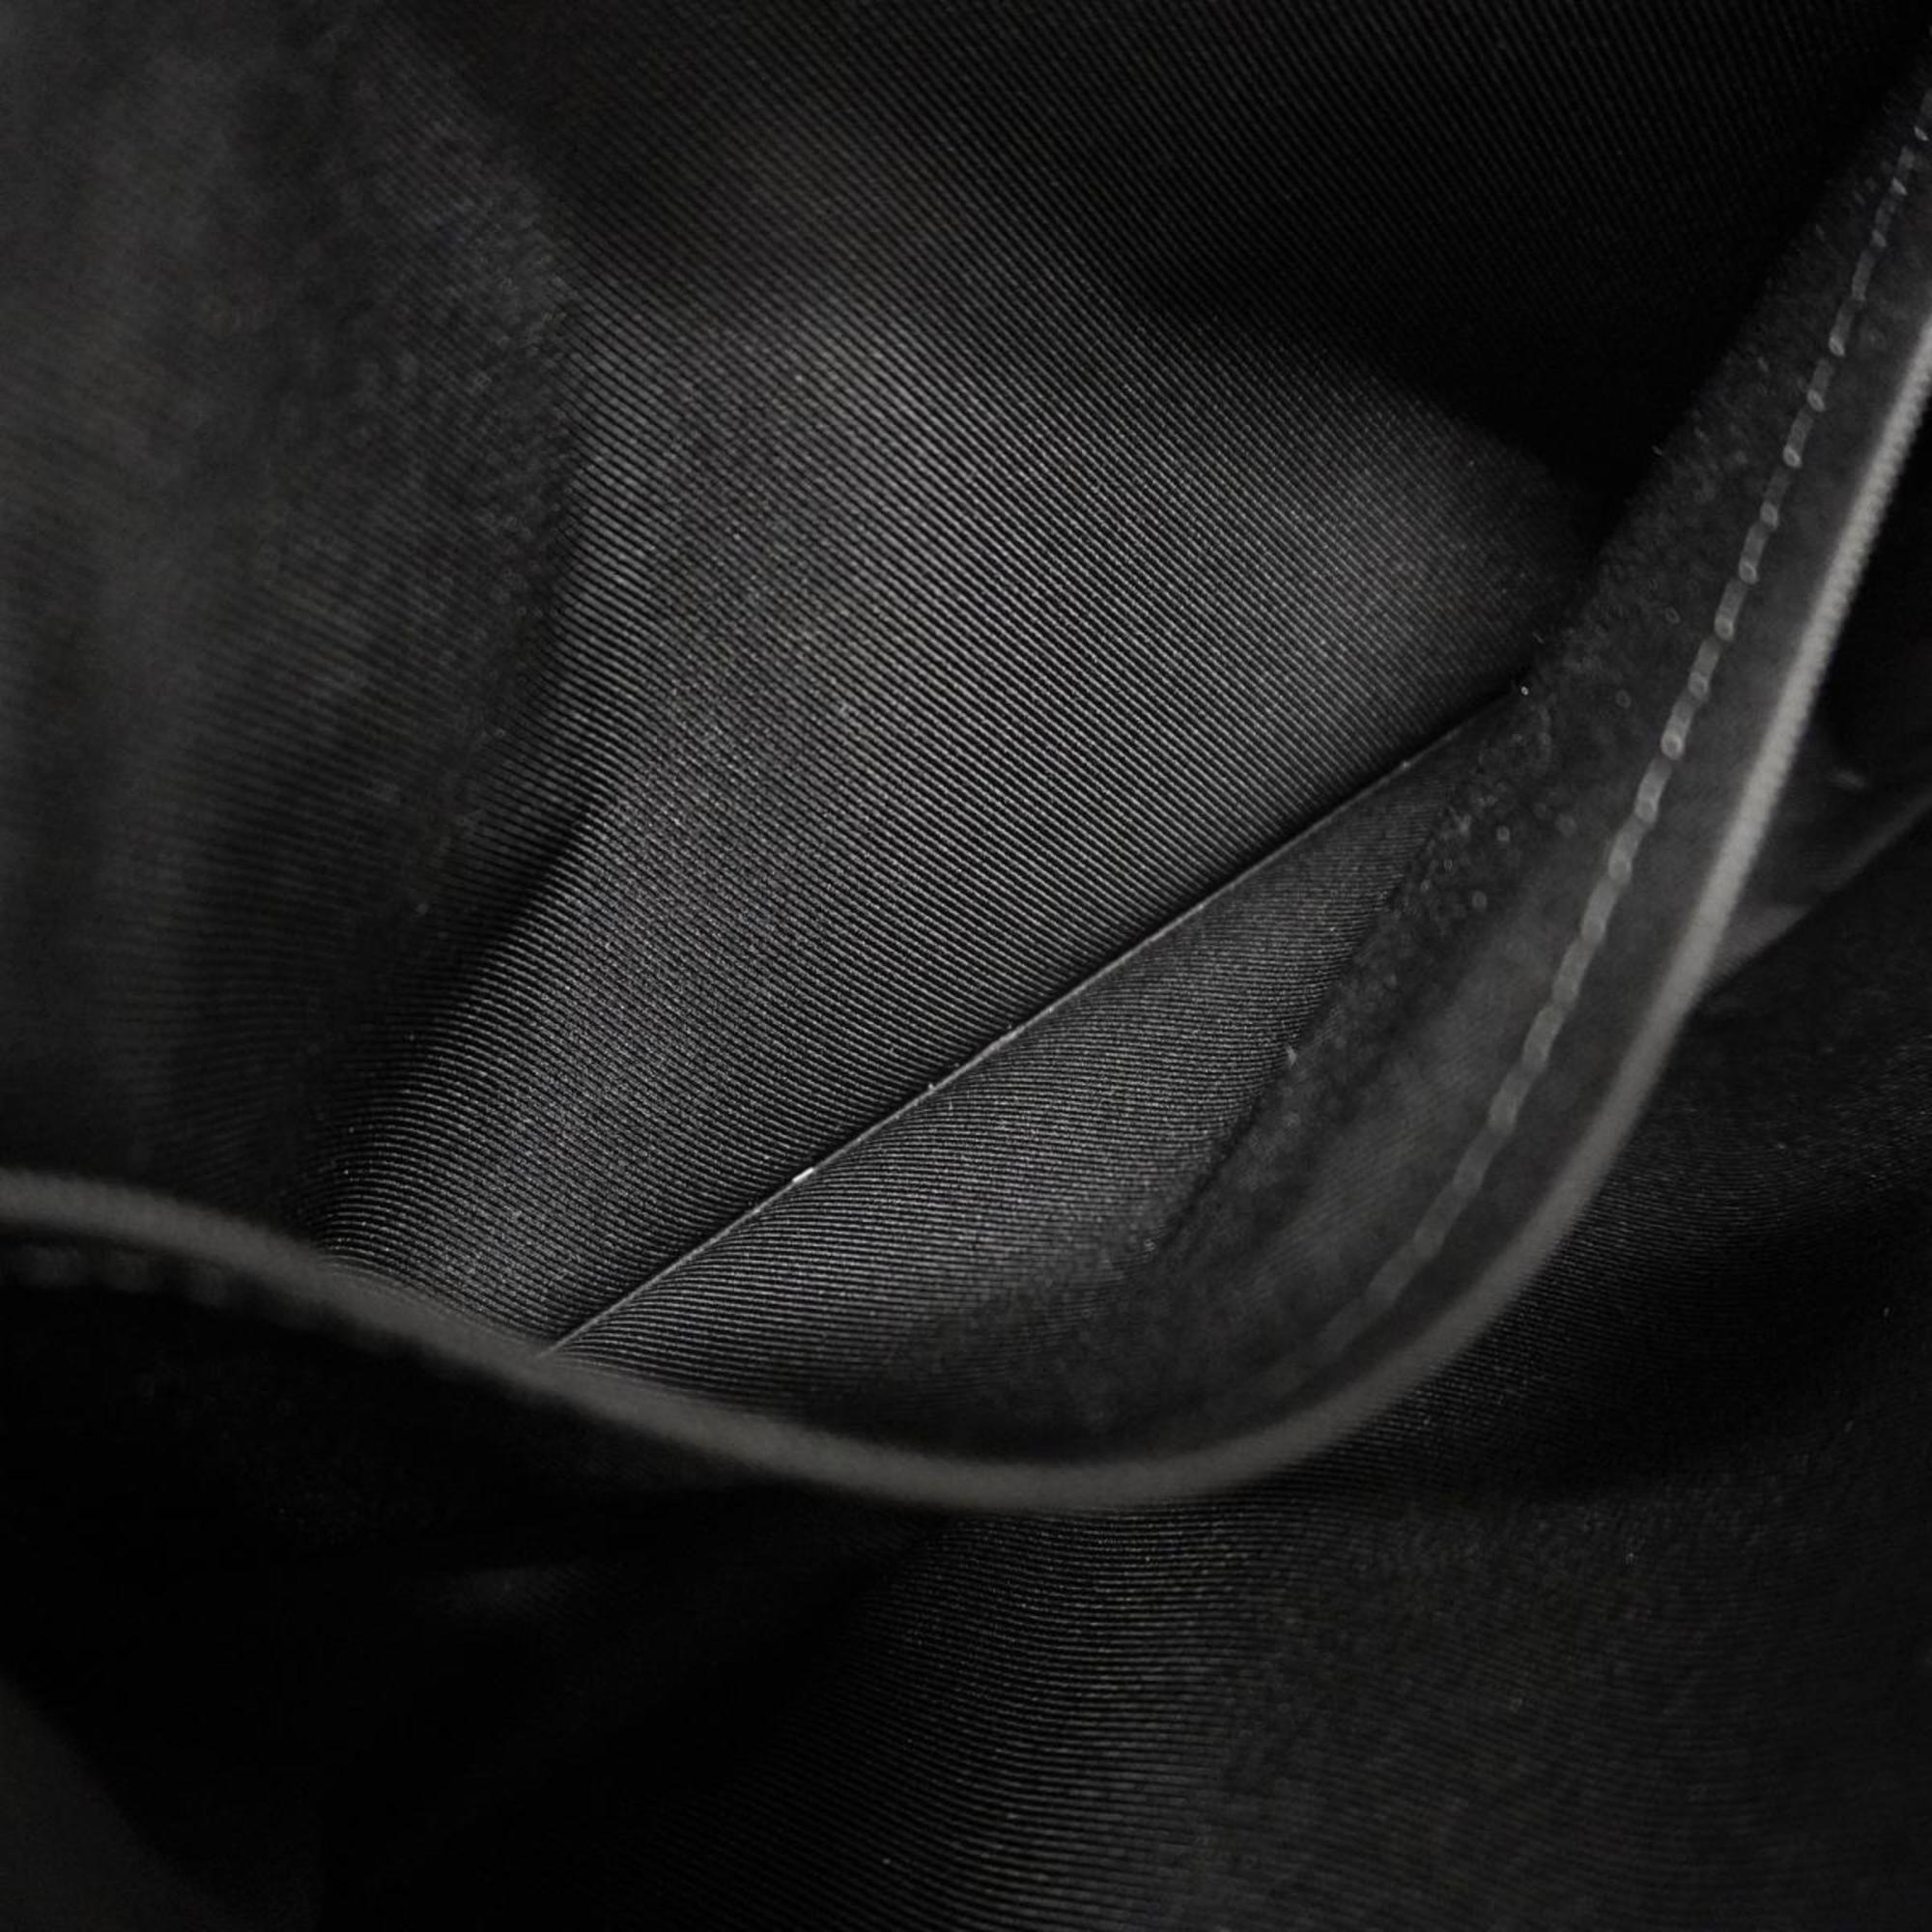 ルイ・ヴィトン(Louis Vuitton) ルイ・ヴィトン ショルダーバッグ ダミエ・アンフィニ ステュディオ N50007 ブラックメンズ